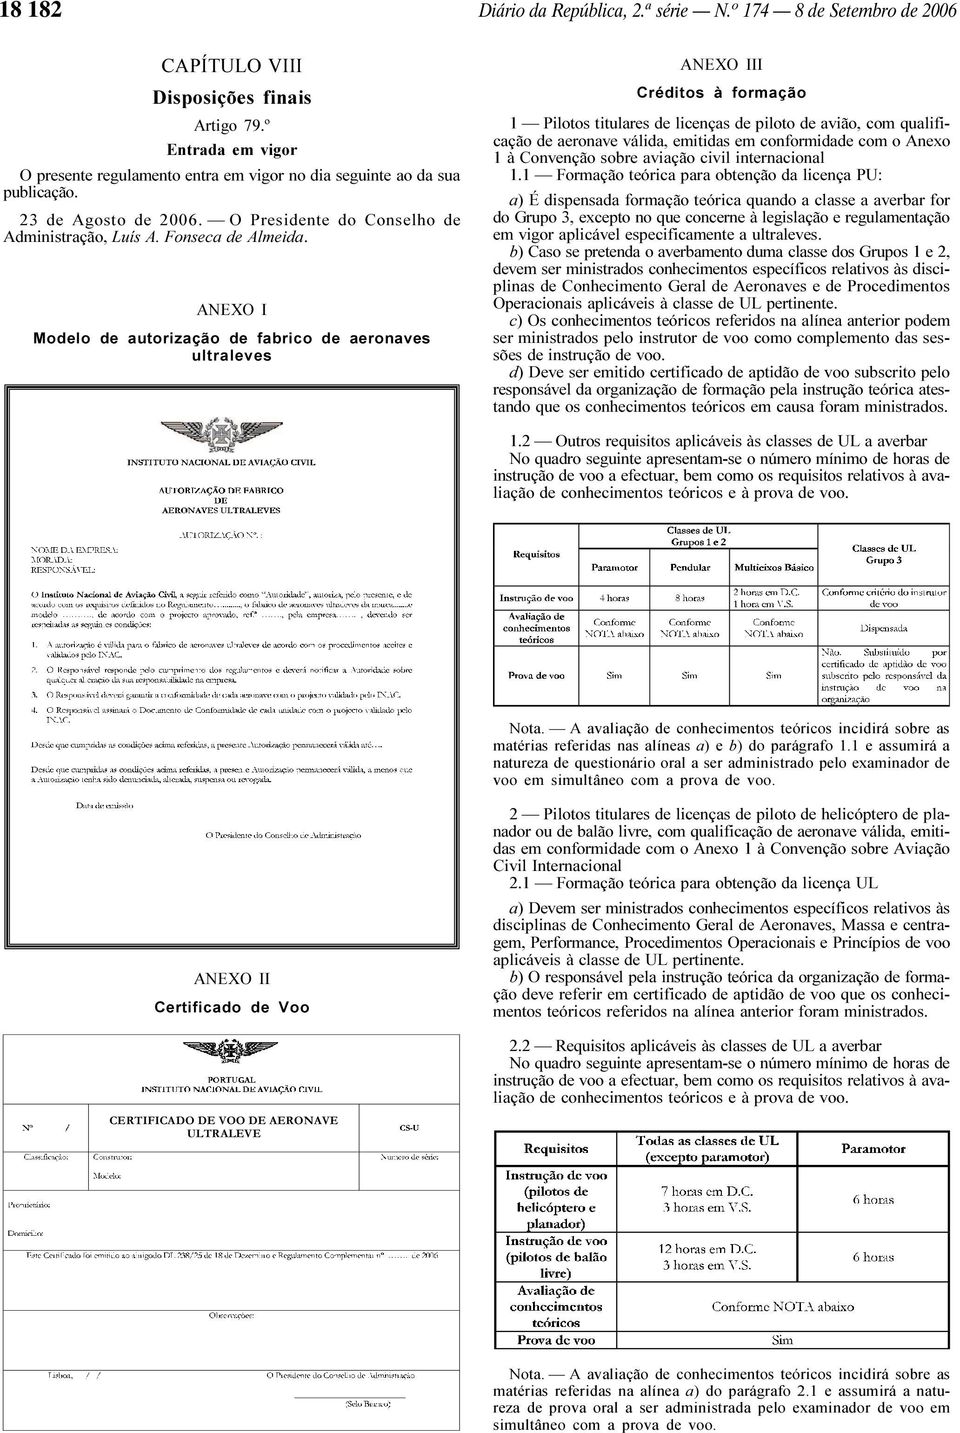 ANEXO I Modelo de autorização de fabrico de aeronaves ultraleves ANEXO III Créditos à formação 1 Pilotos titulares de licenças de piloto de avião, com qualificação de aeronave válida, emitidas em